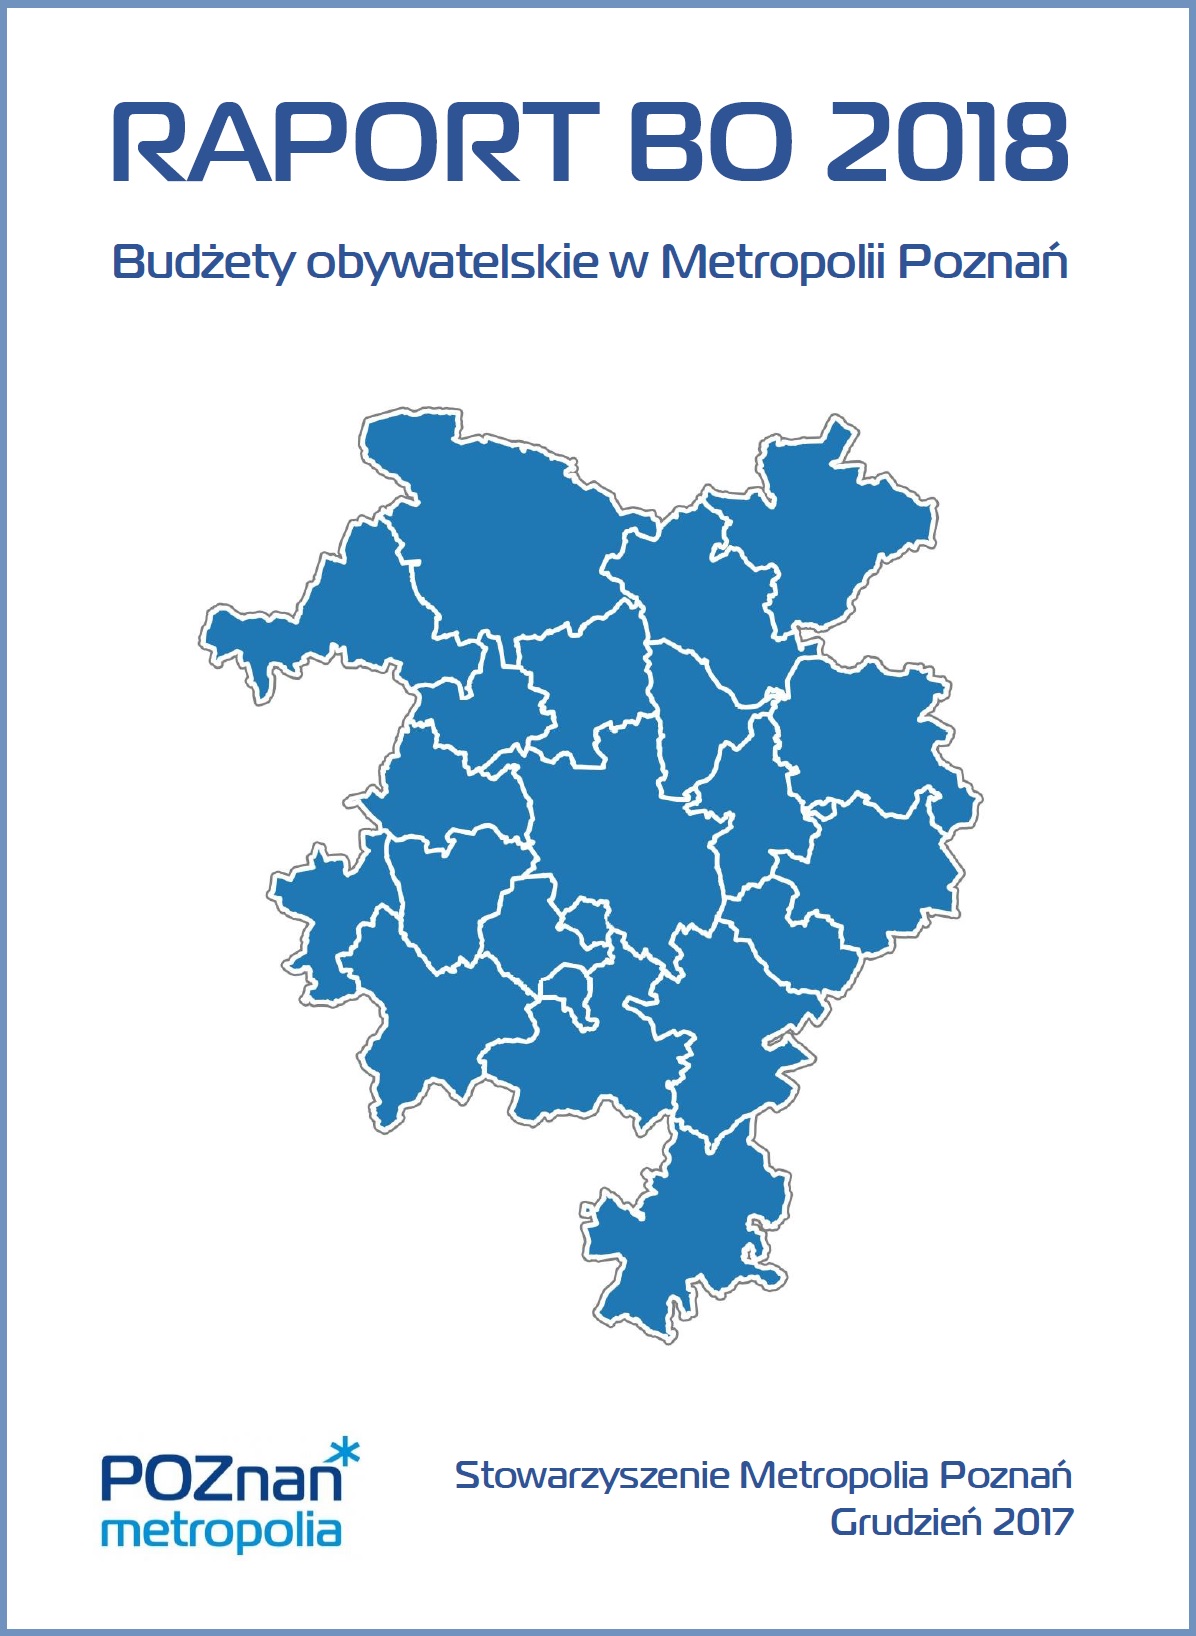 Publikujemy najnowszy Raport o budżetach obywatelskich w Metropolii Poznań.